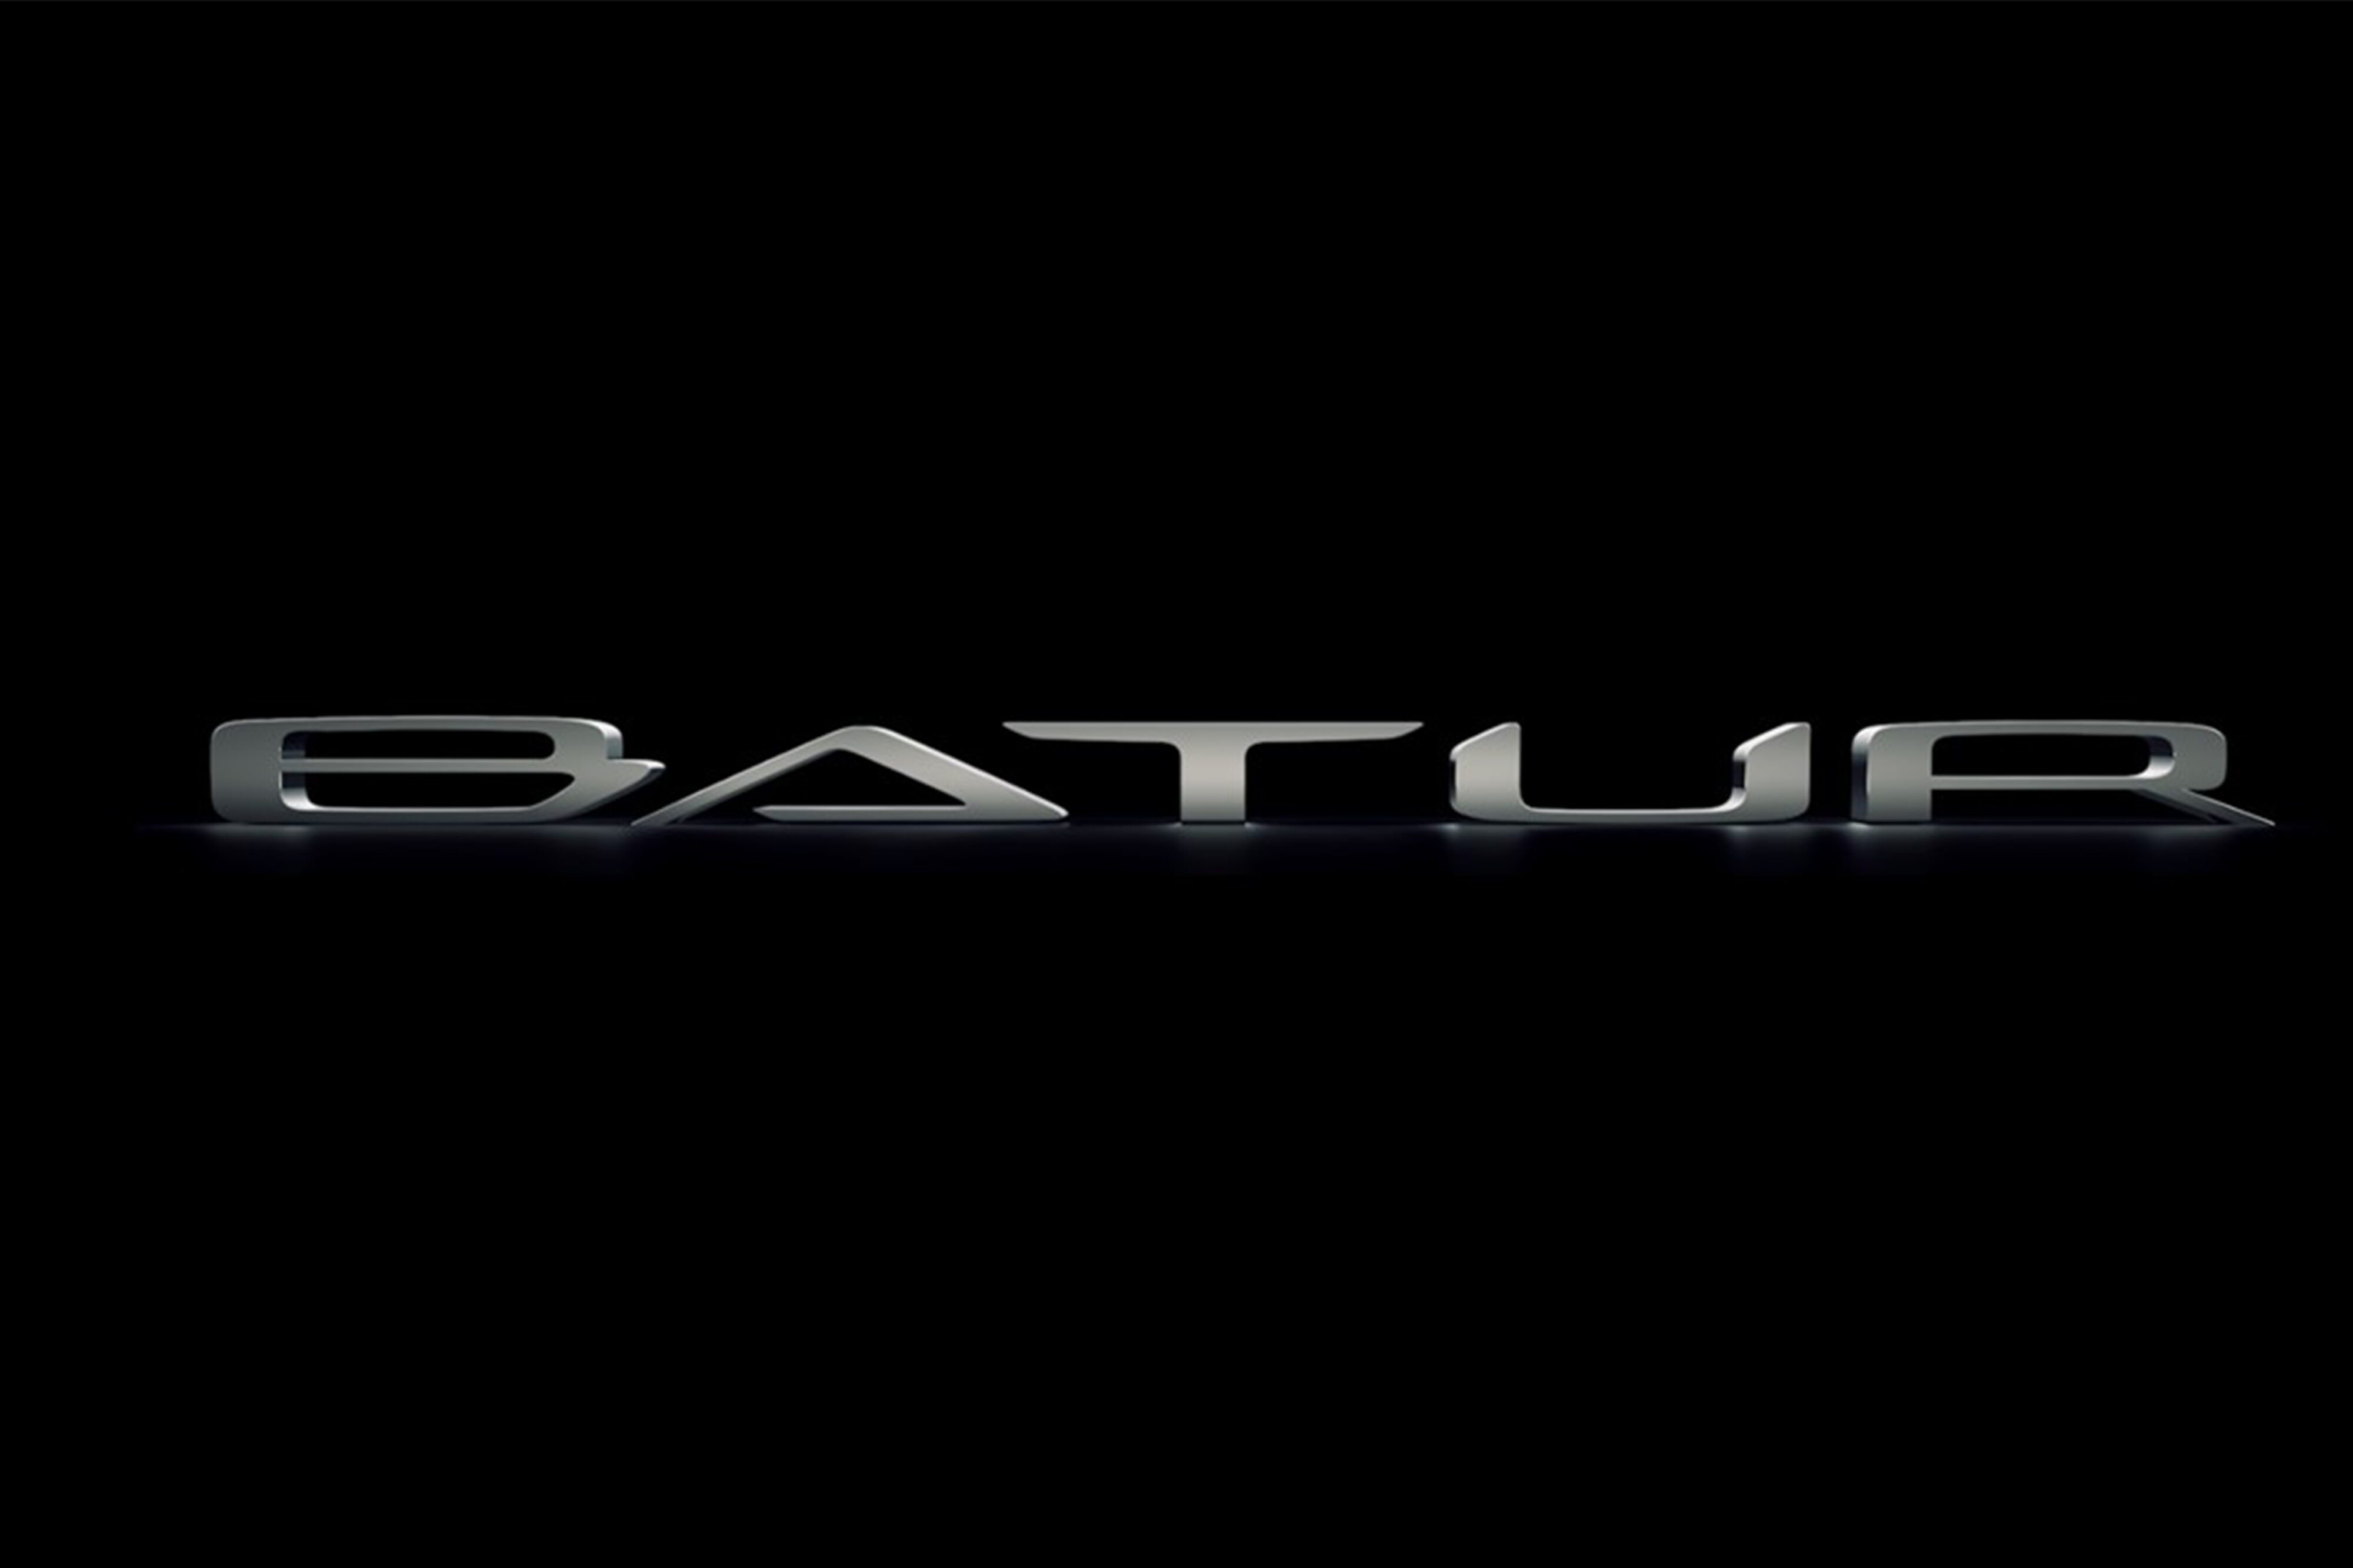 A teaser image of the Bentley Mulliner Batur logo on a black background.